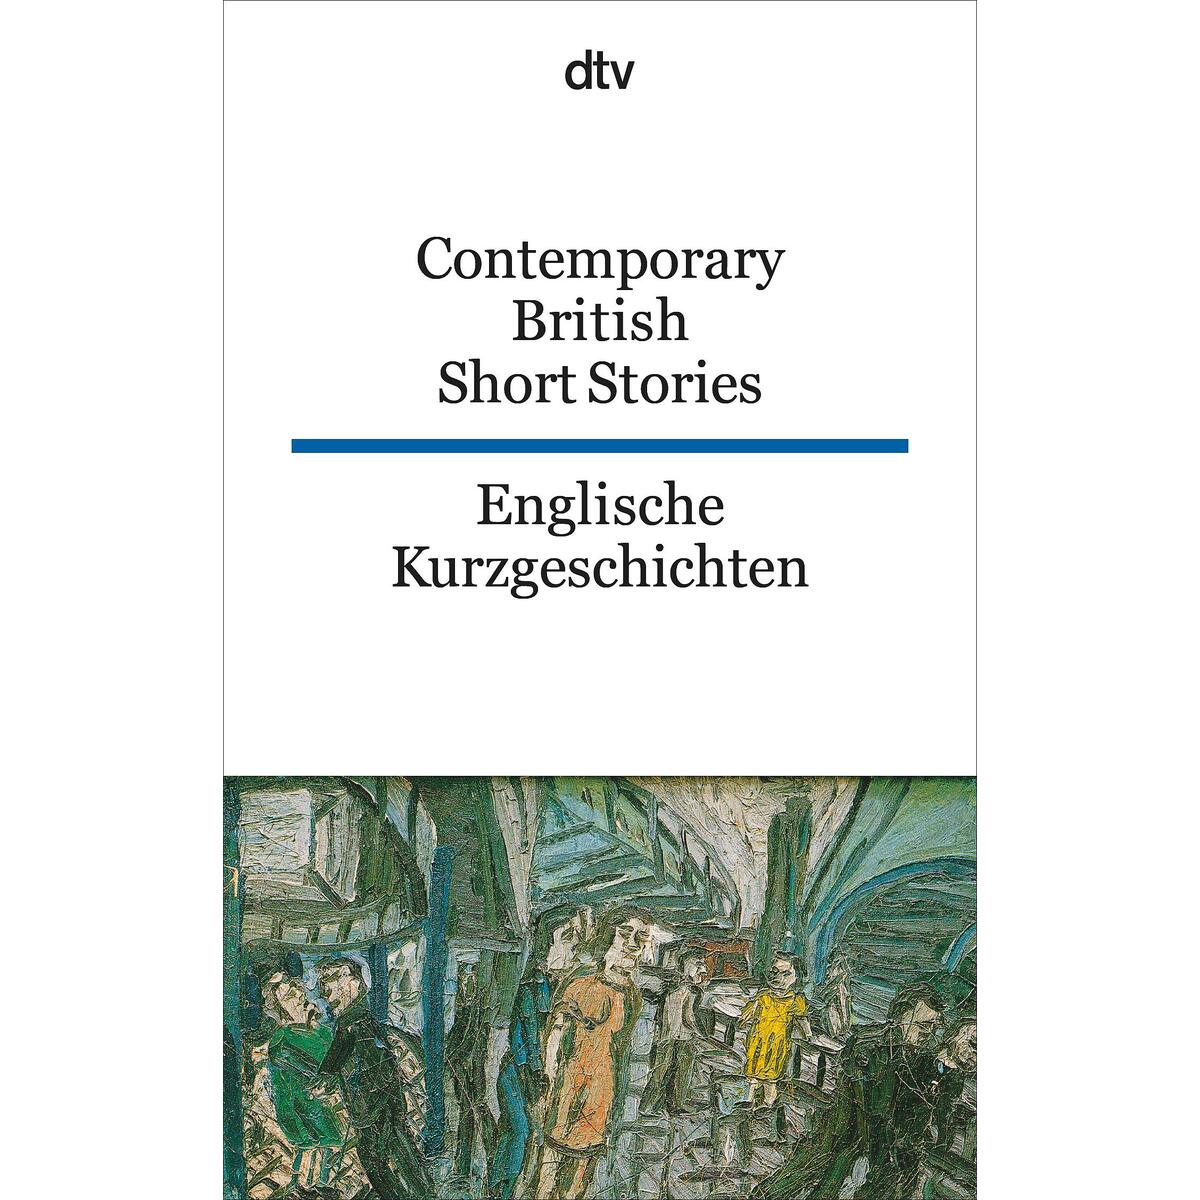 Englische Kurzgeschichten / Contemporary British Short Stories von dtv Verlagsgesellschaft